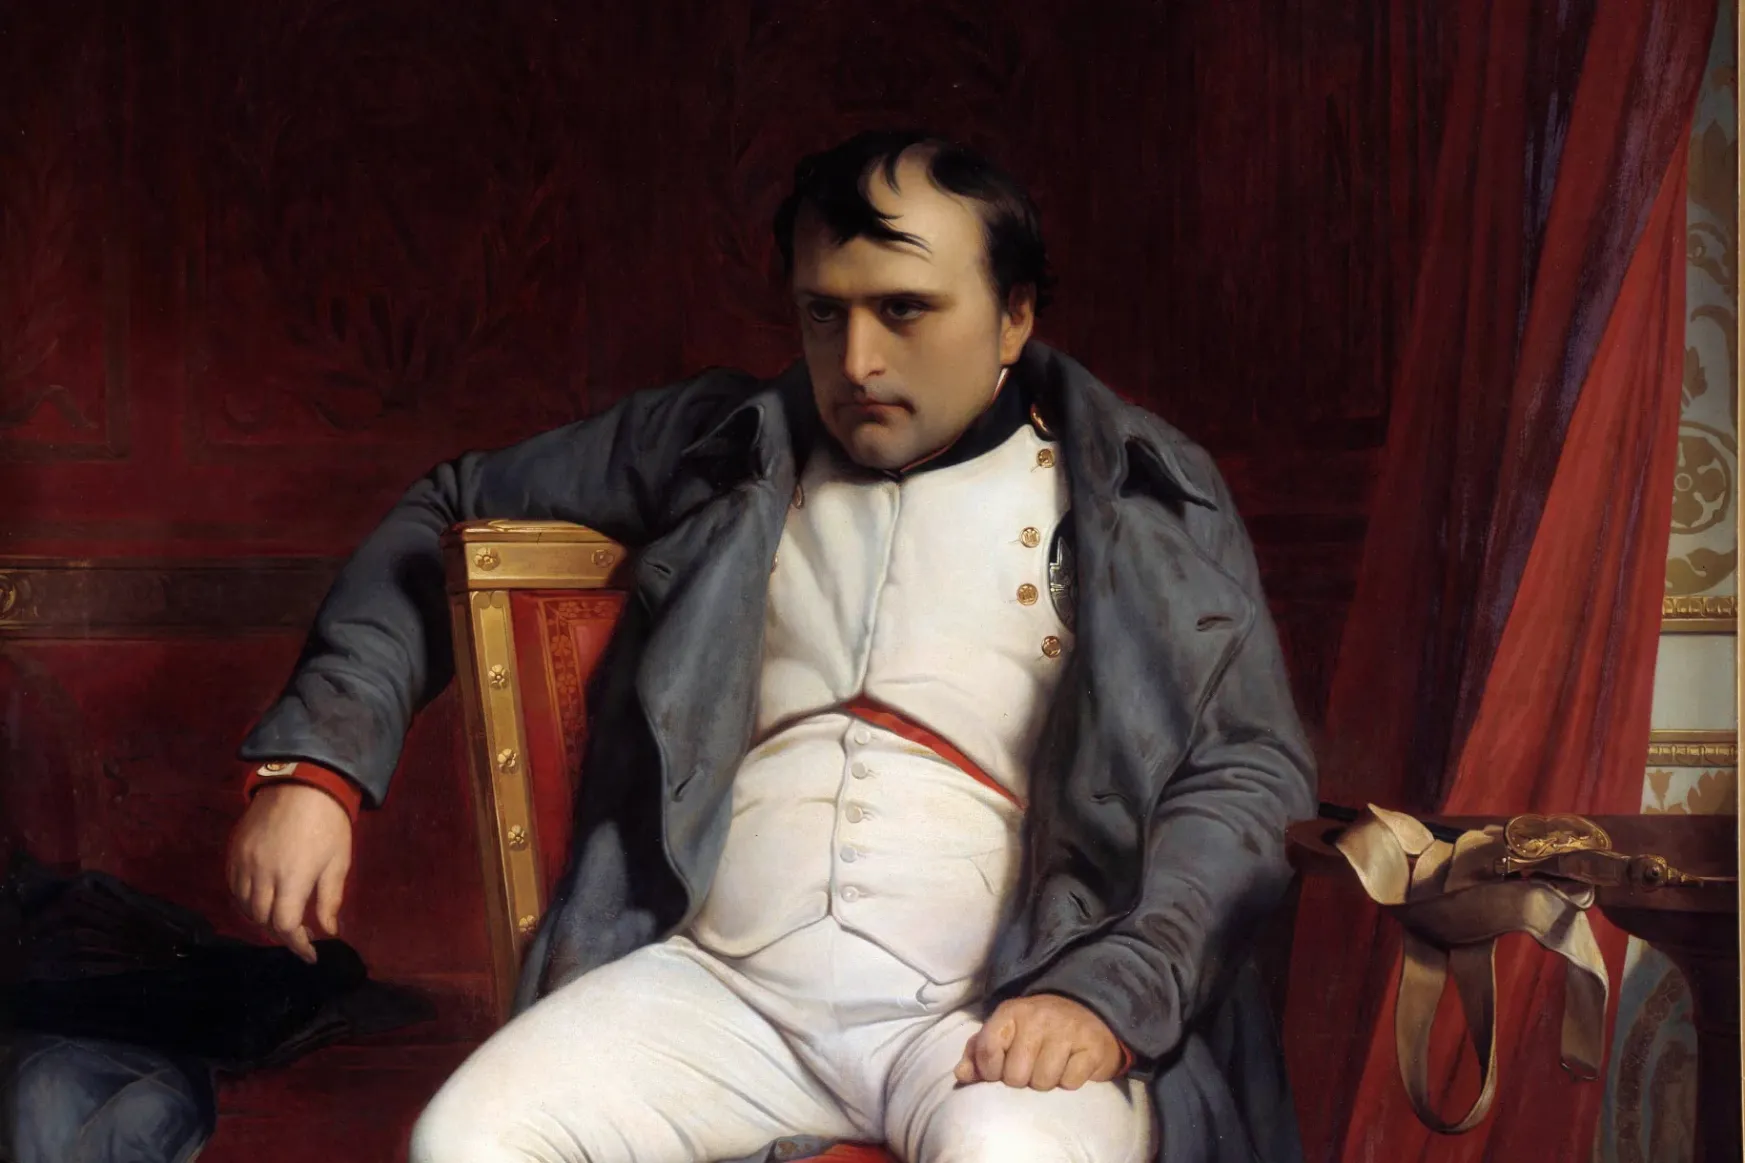 Napóleon egy hadseregnyi nyúl ellen szenvedte el a legfurcsább vereségét